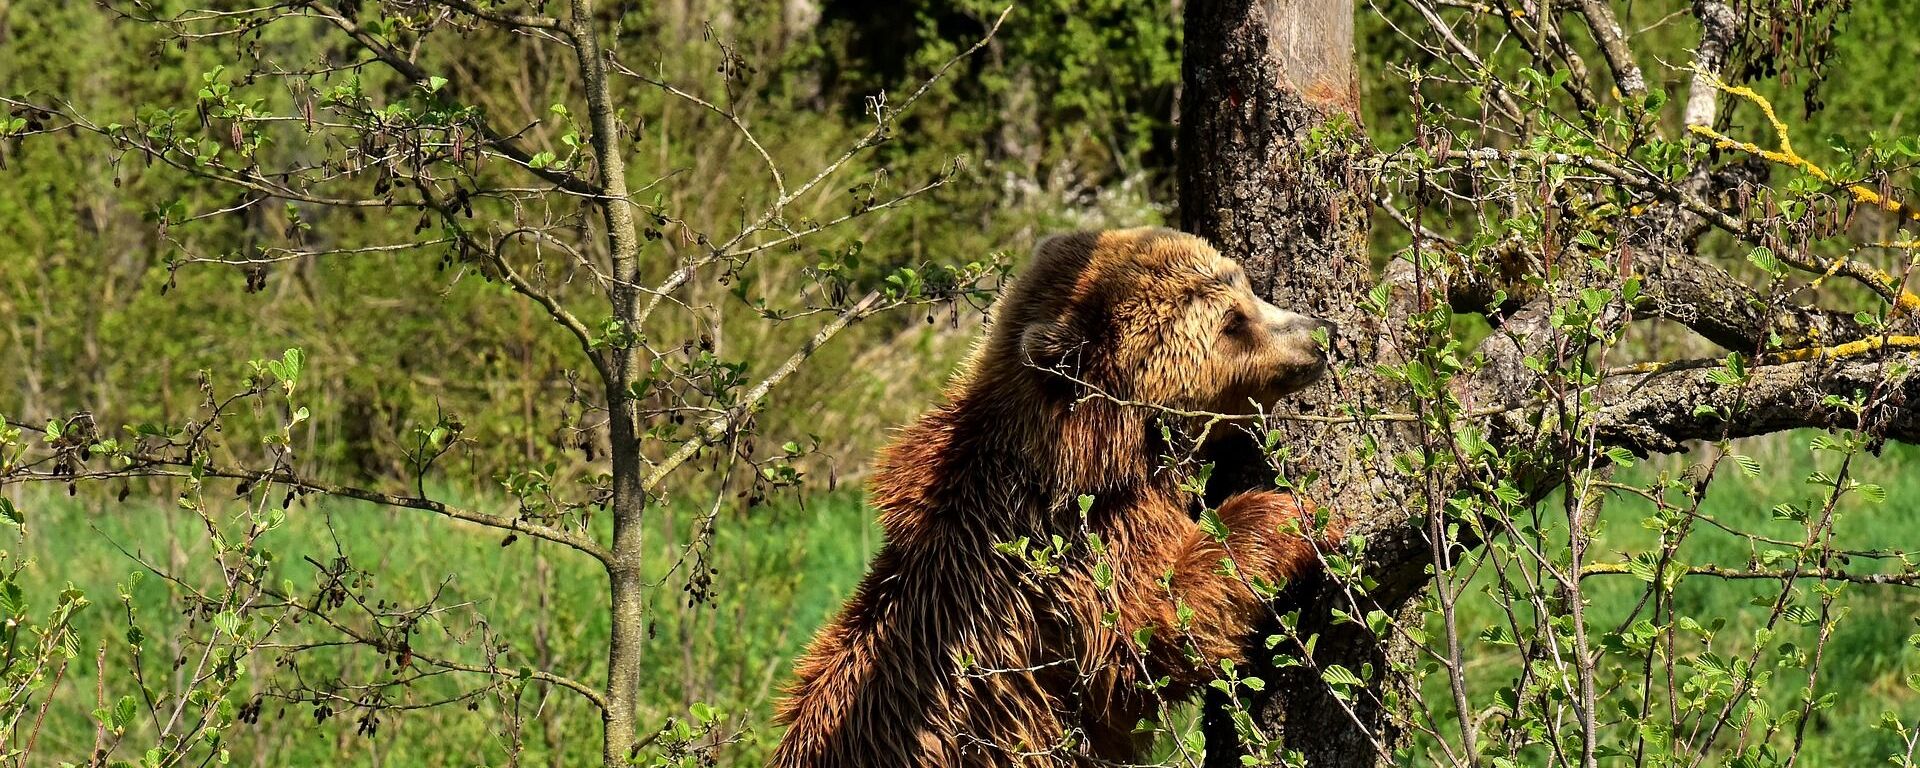 Мрки медвед у шуми - Sputnik Србија, 1920, 02.11.2021